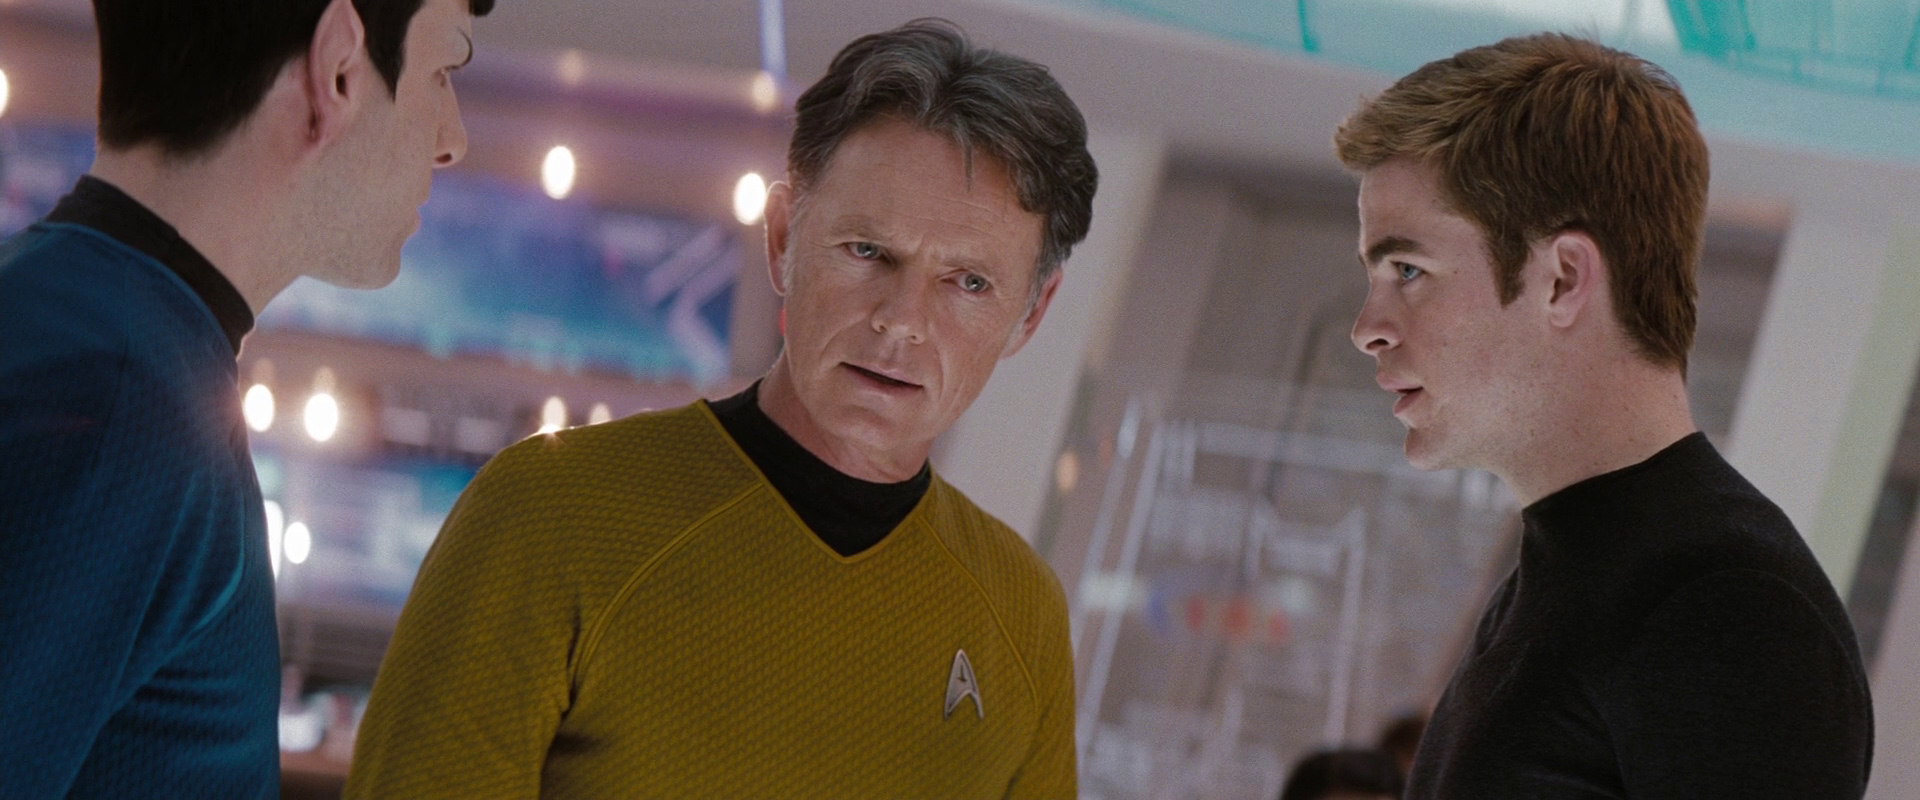 Kirk varuje kapitána, ať čeká léčku dávné nepřátelské lodi.